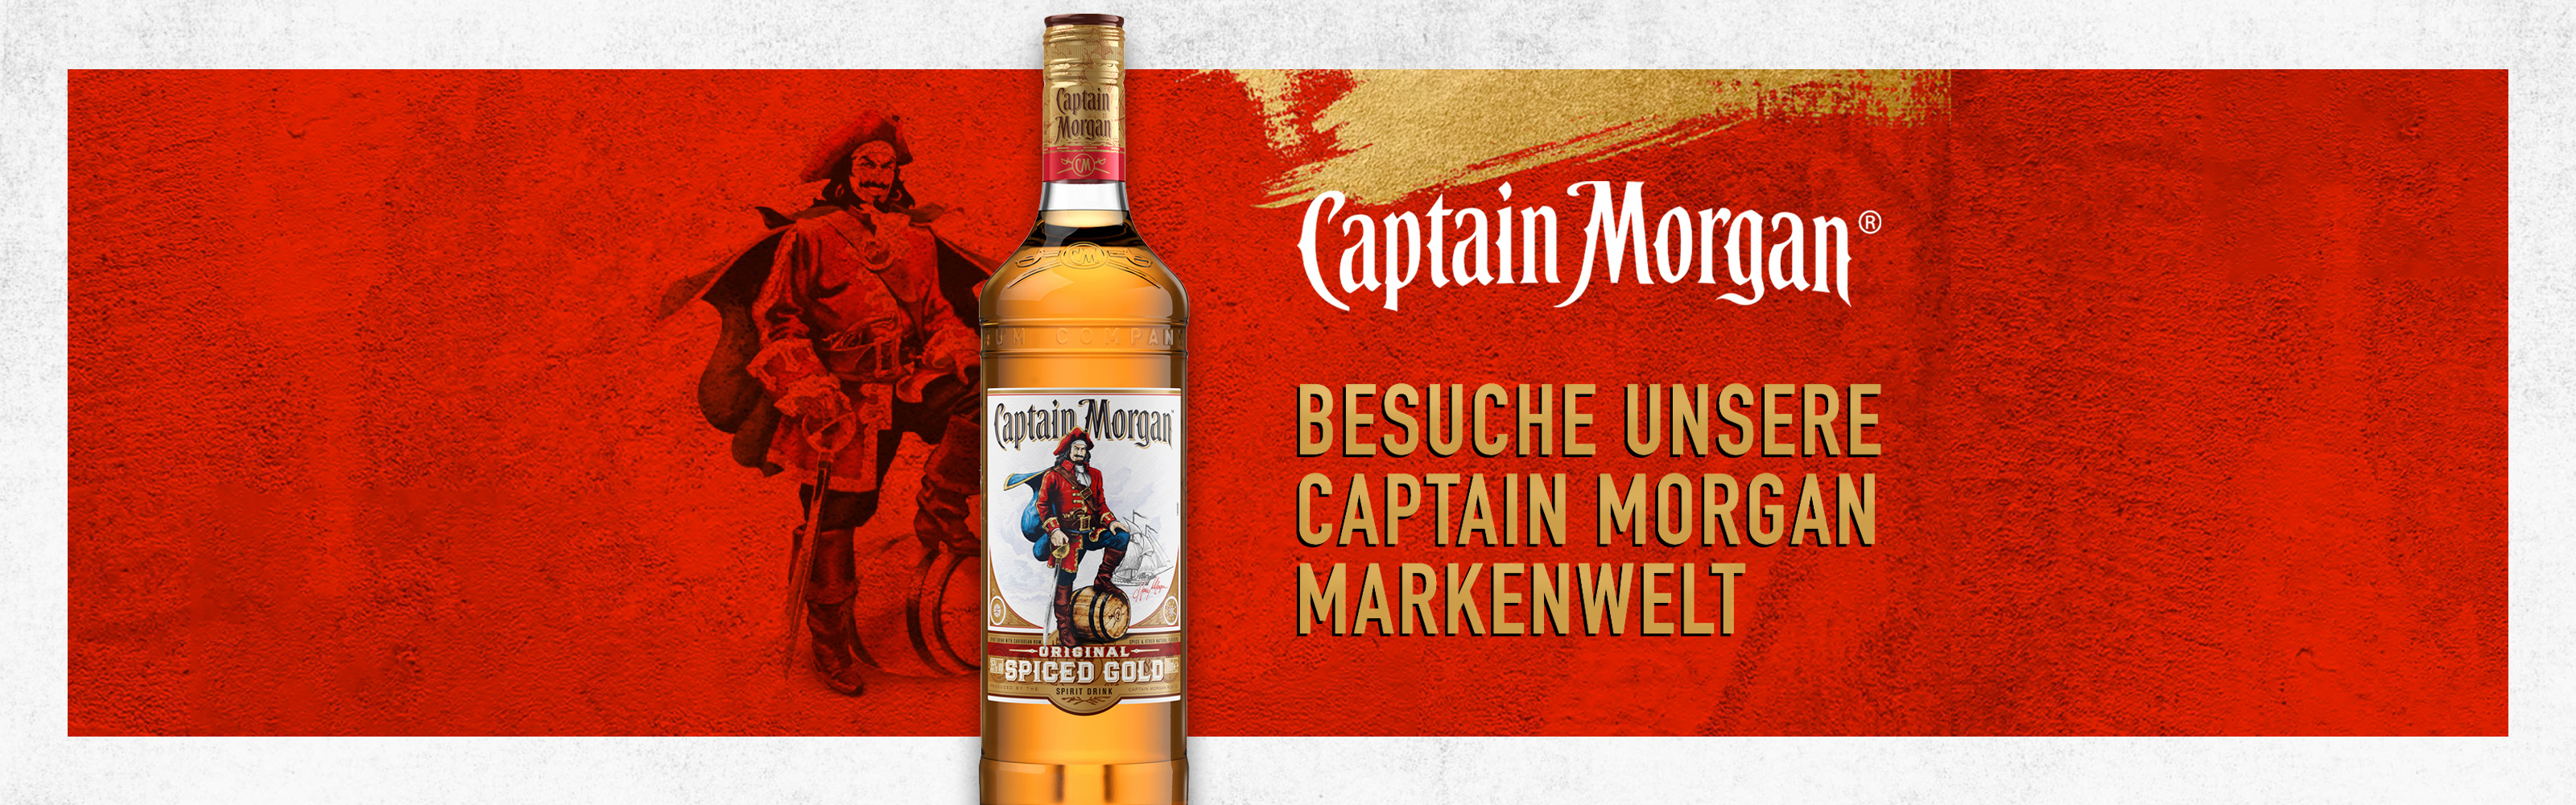 Zur Markenwelt von Captain Morgan